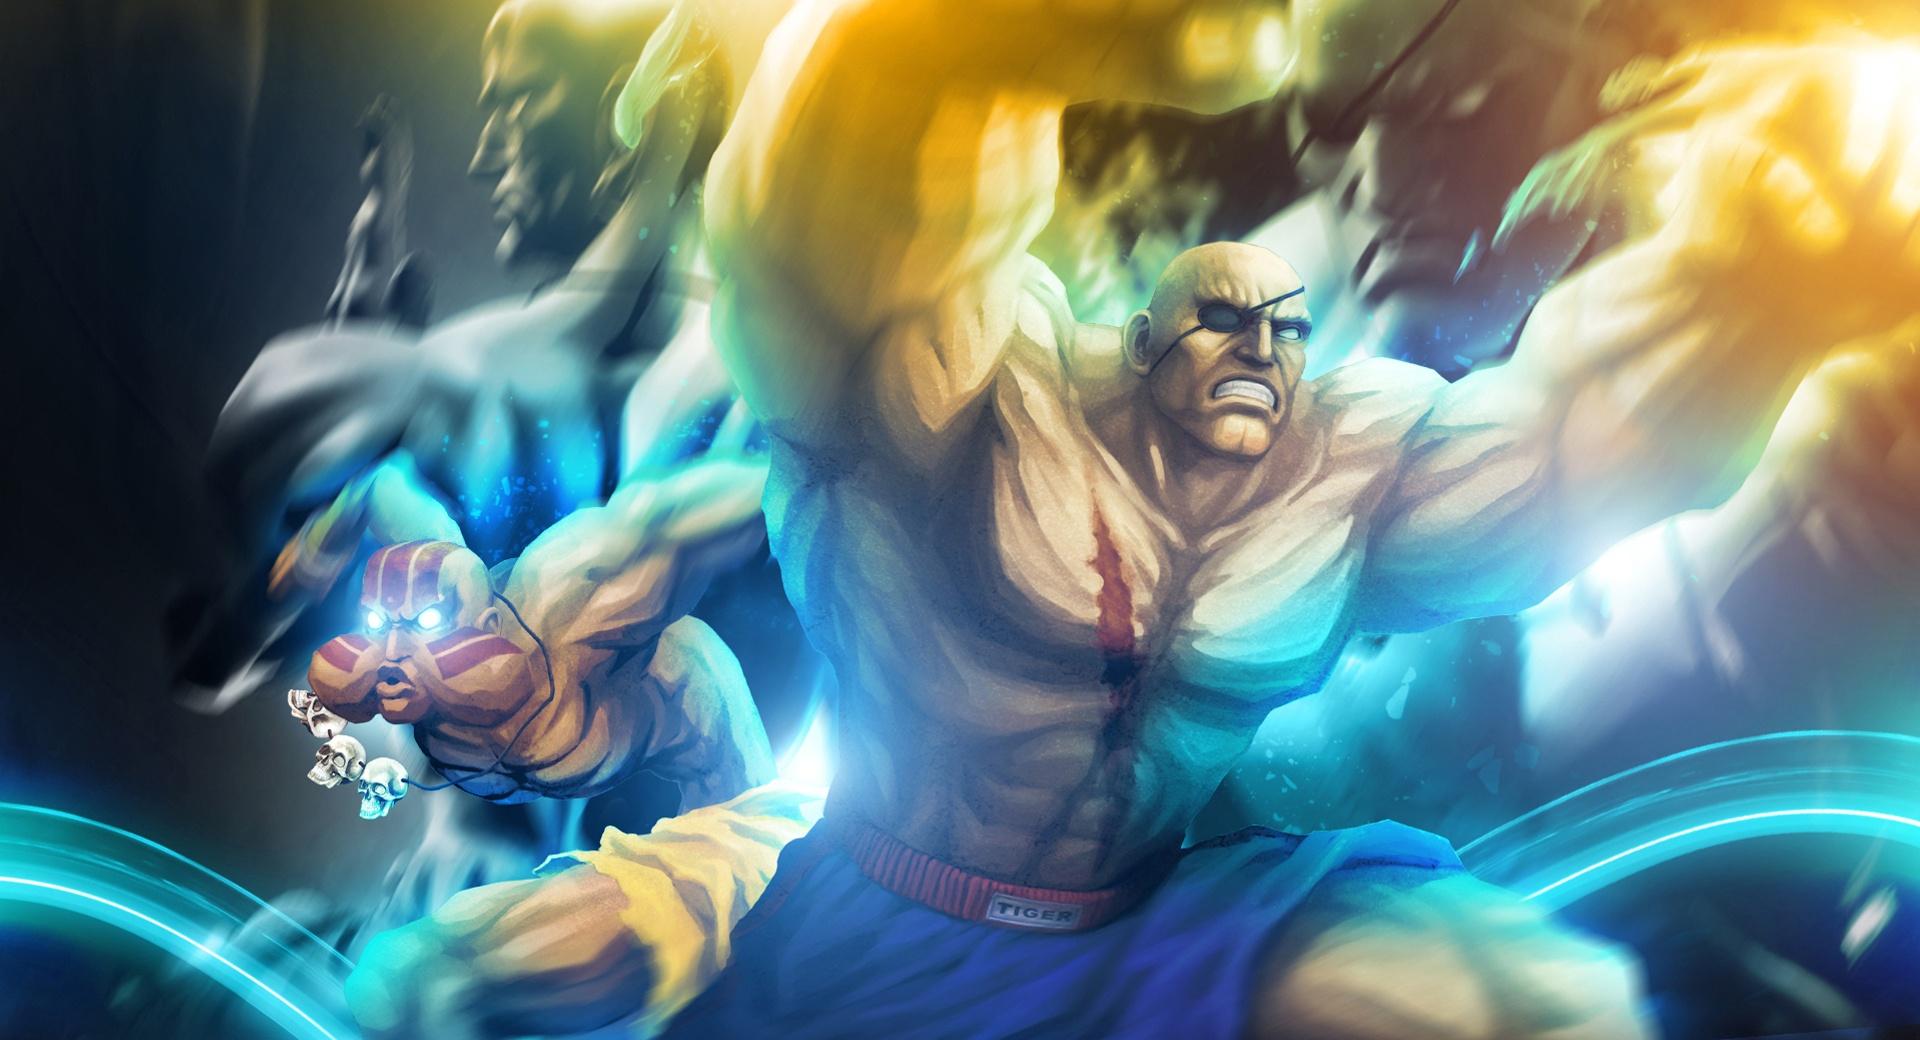 Street Fighter X Tekken - Sagat Dhalsim wallpapers HD quality